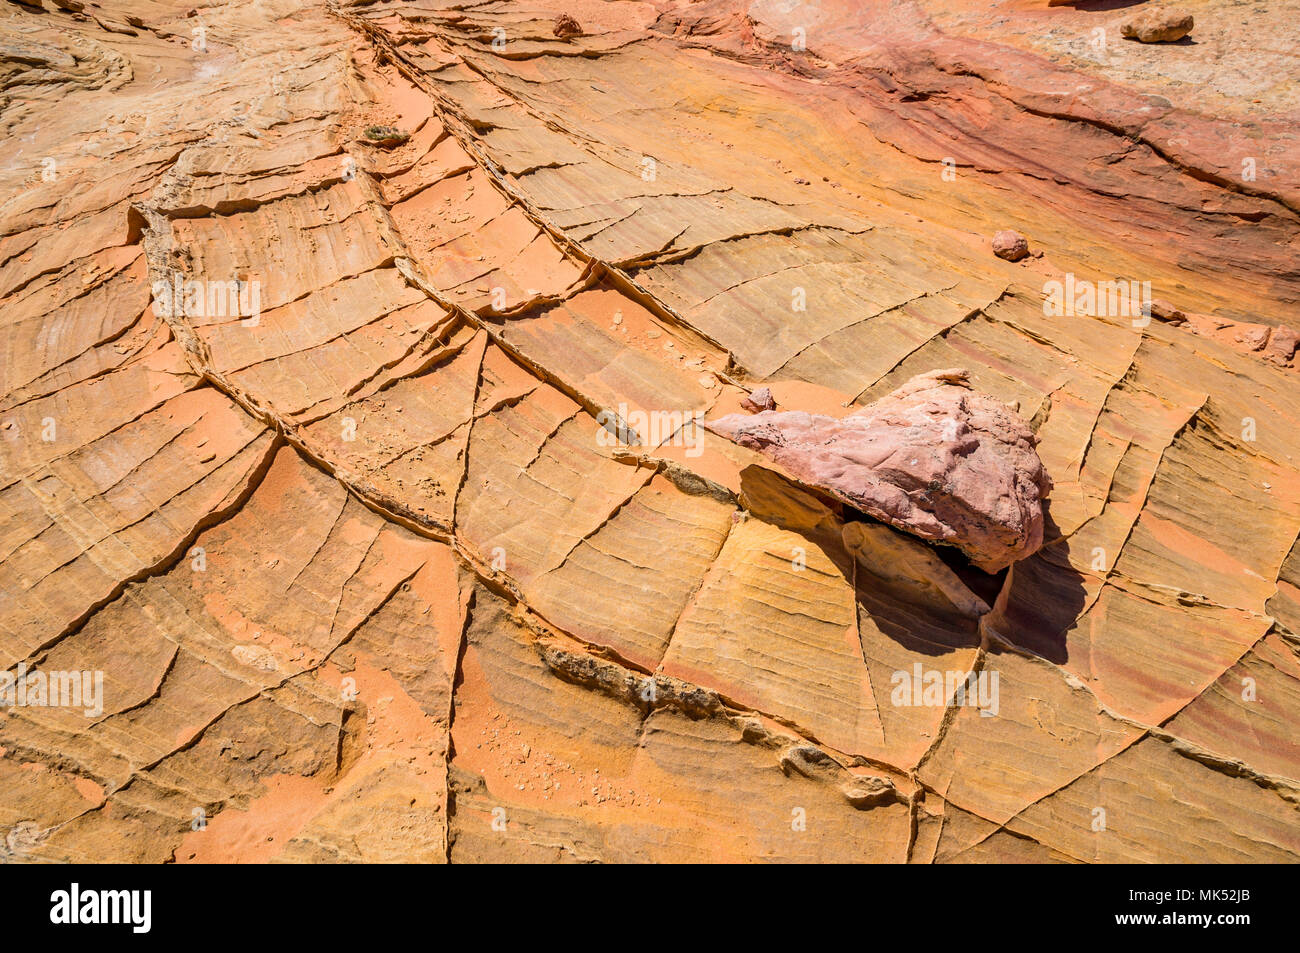 Formations de grès colorés du sud de la zone d'accès Cottonwood Coyote Buttes Vermilion Cliffs National Monument Arizona Etats-unis d'Amérique Banque D'Images